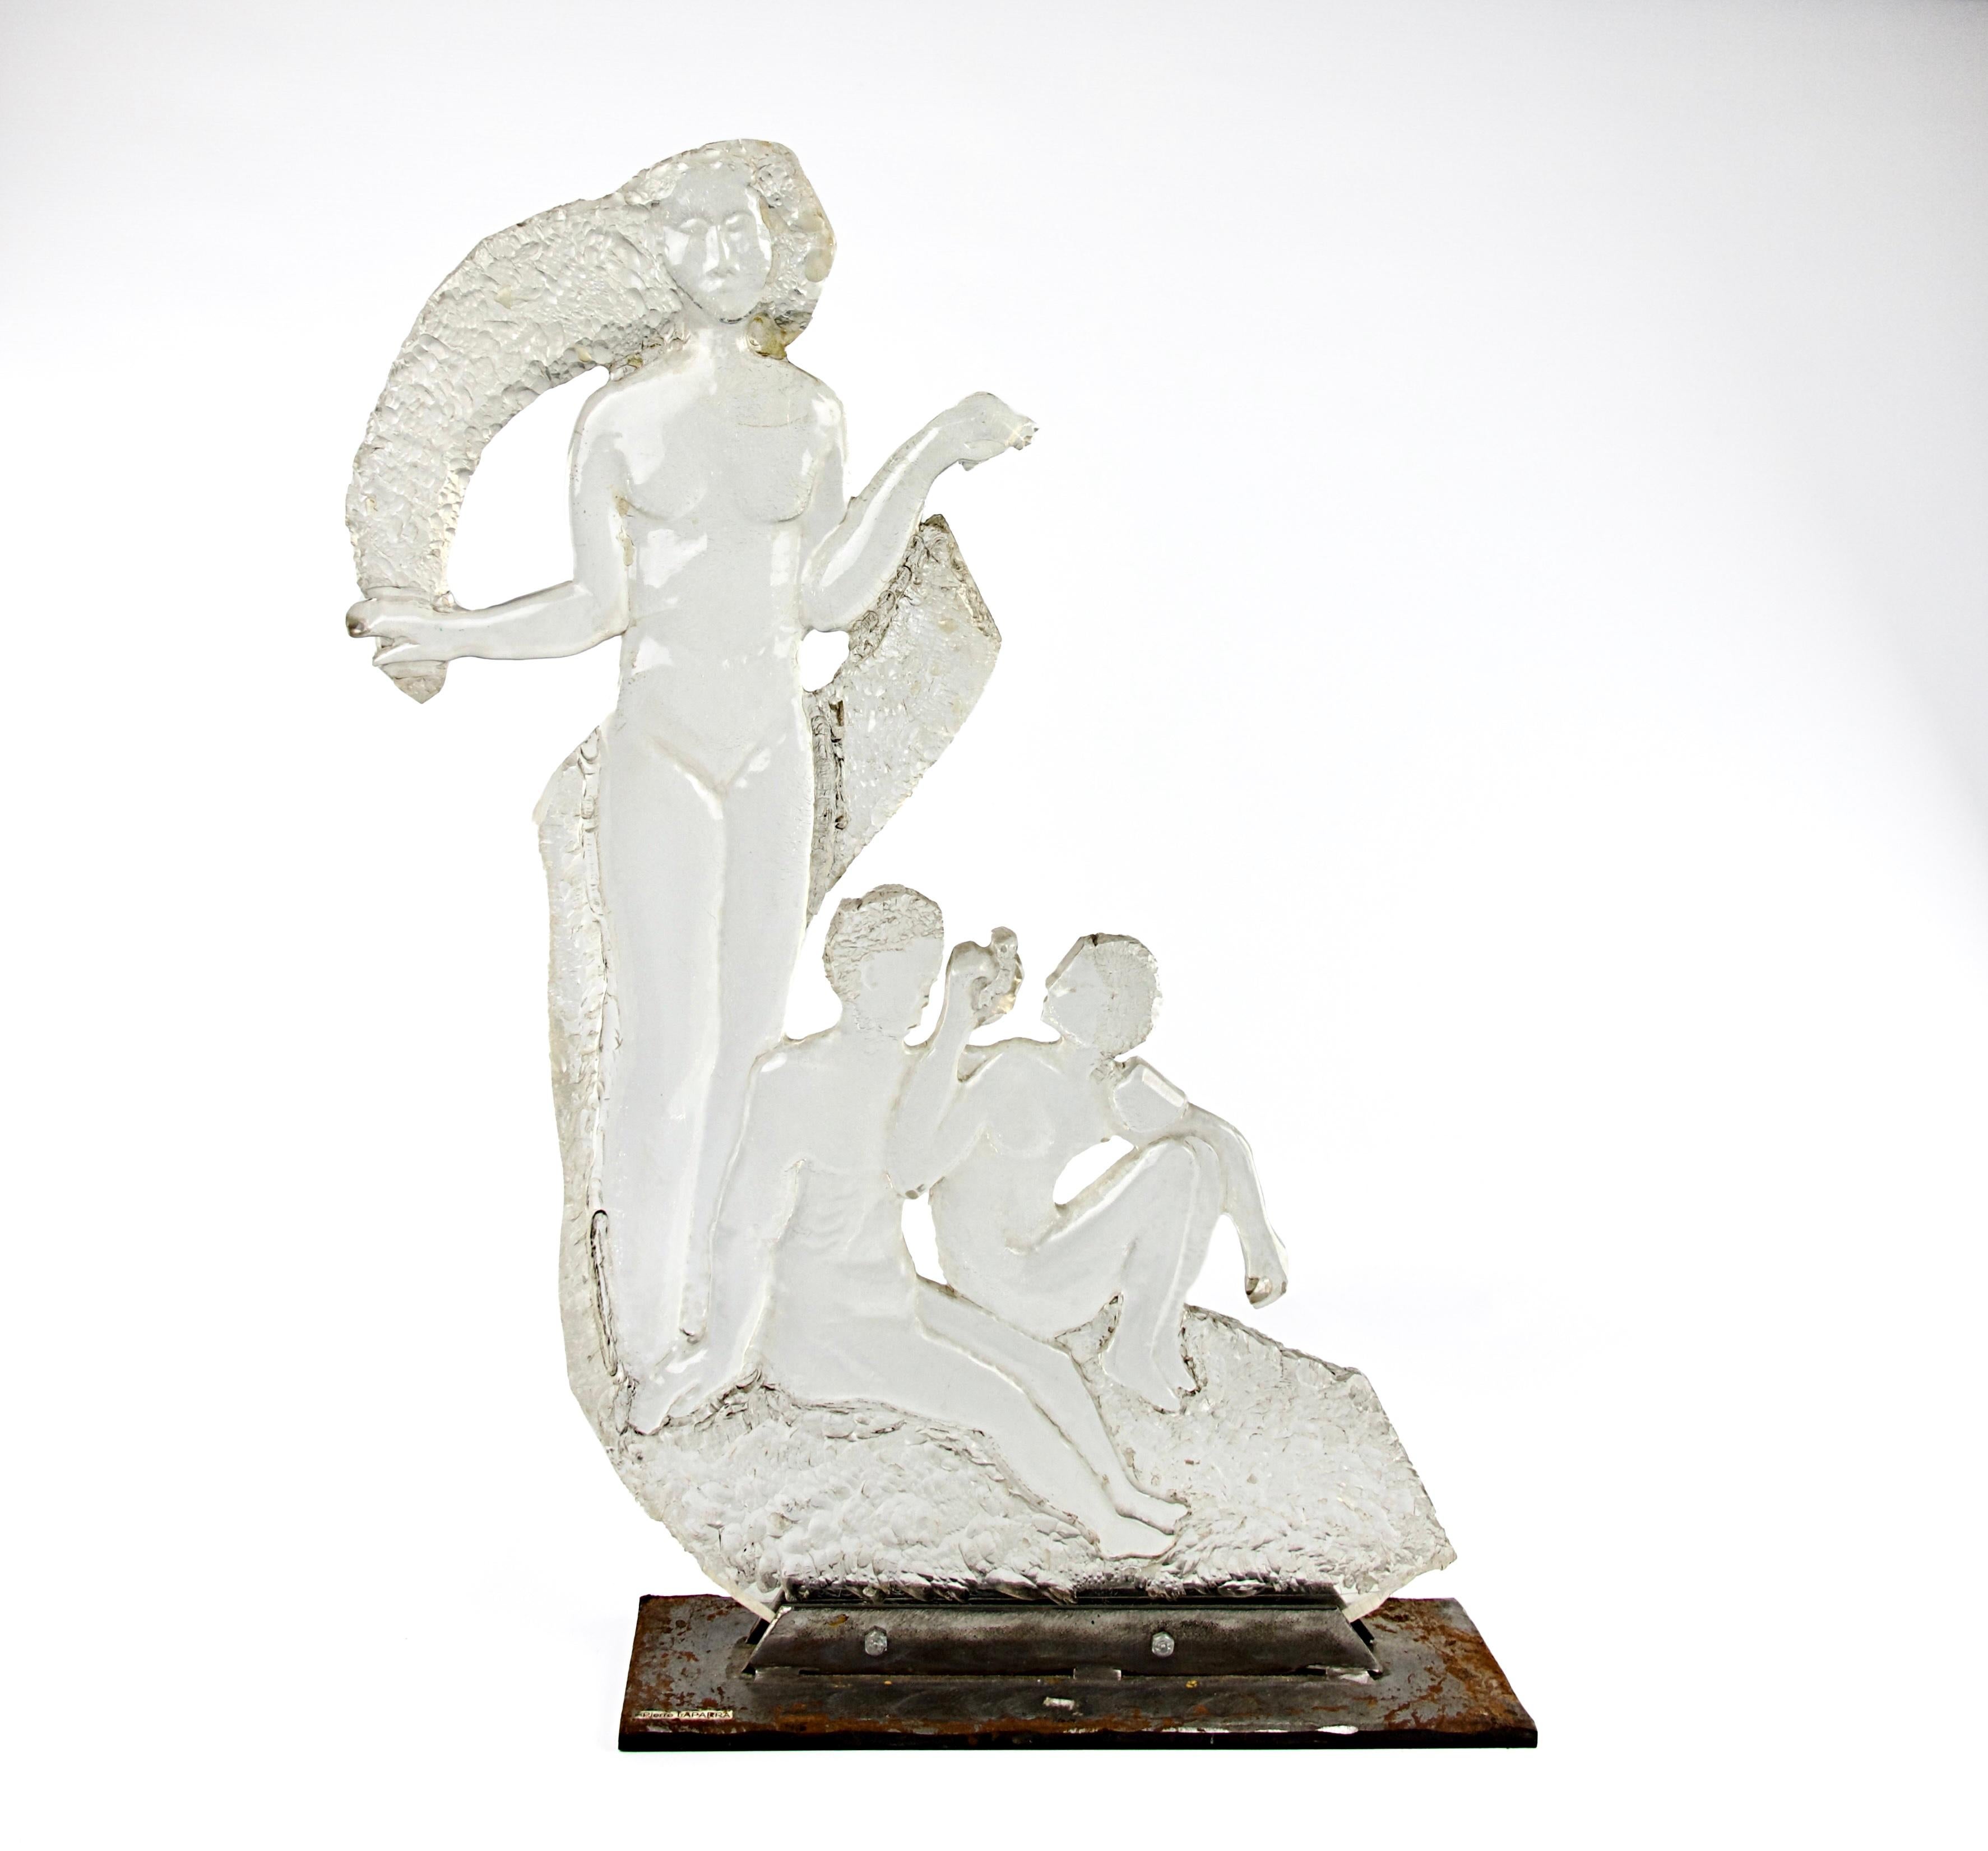 Superbe sculpture moderniste de style romantique des années 1970 représentant une femme nue et deux enfants par l'artiste Pierre Laparra. Plexiglas sculpté monté sur une base métallique. 

En bon état. Quelques petits signes